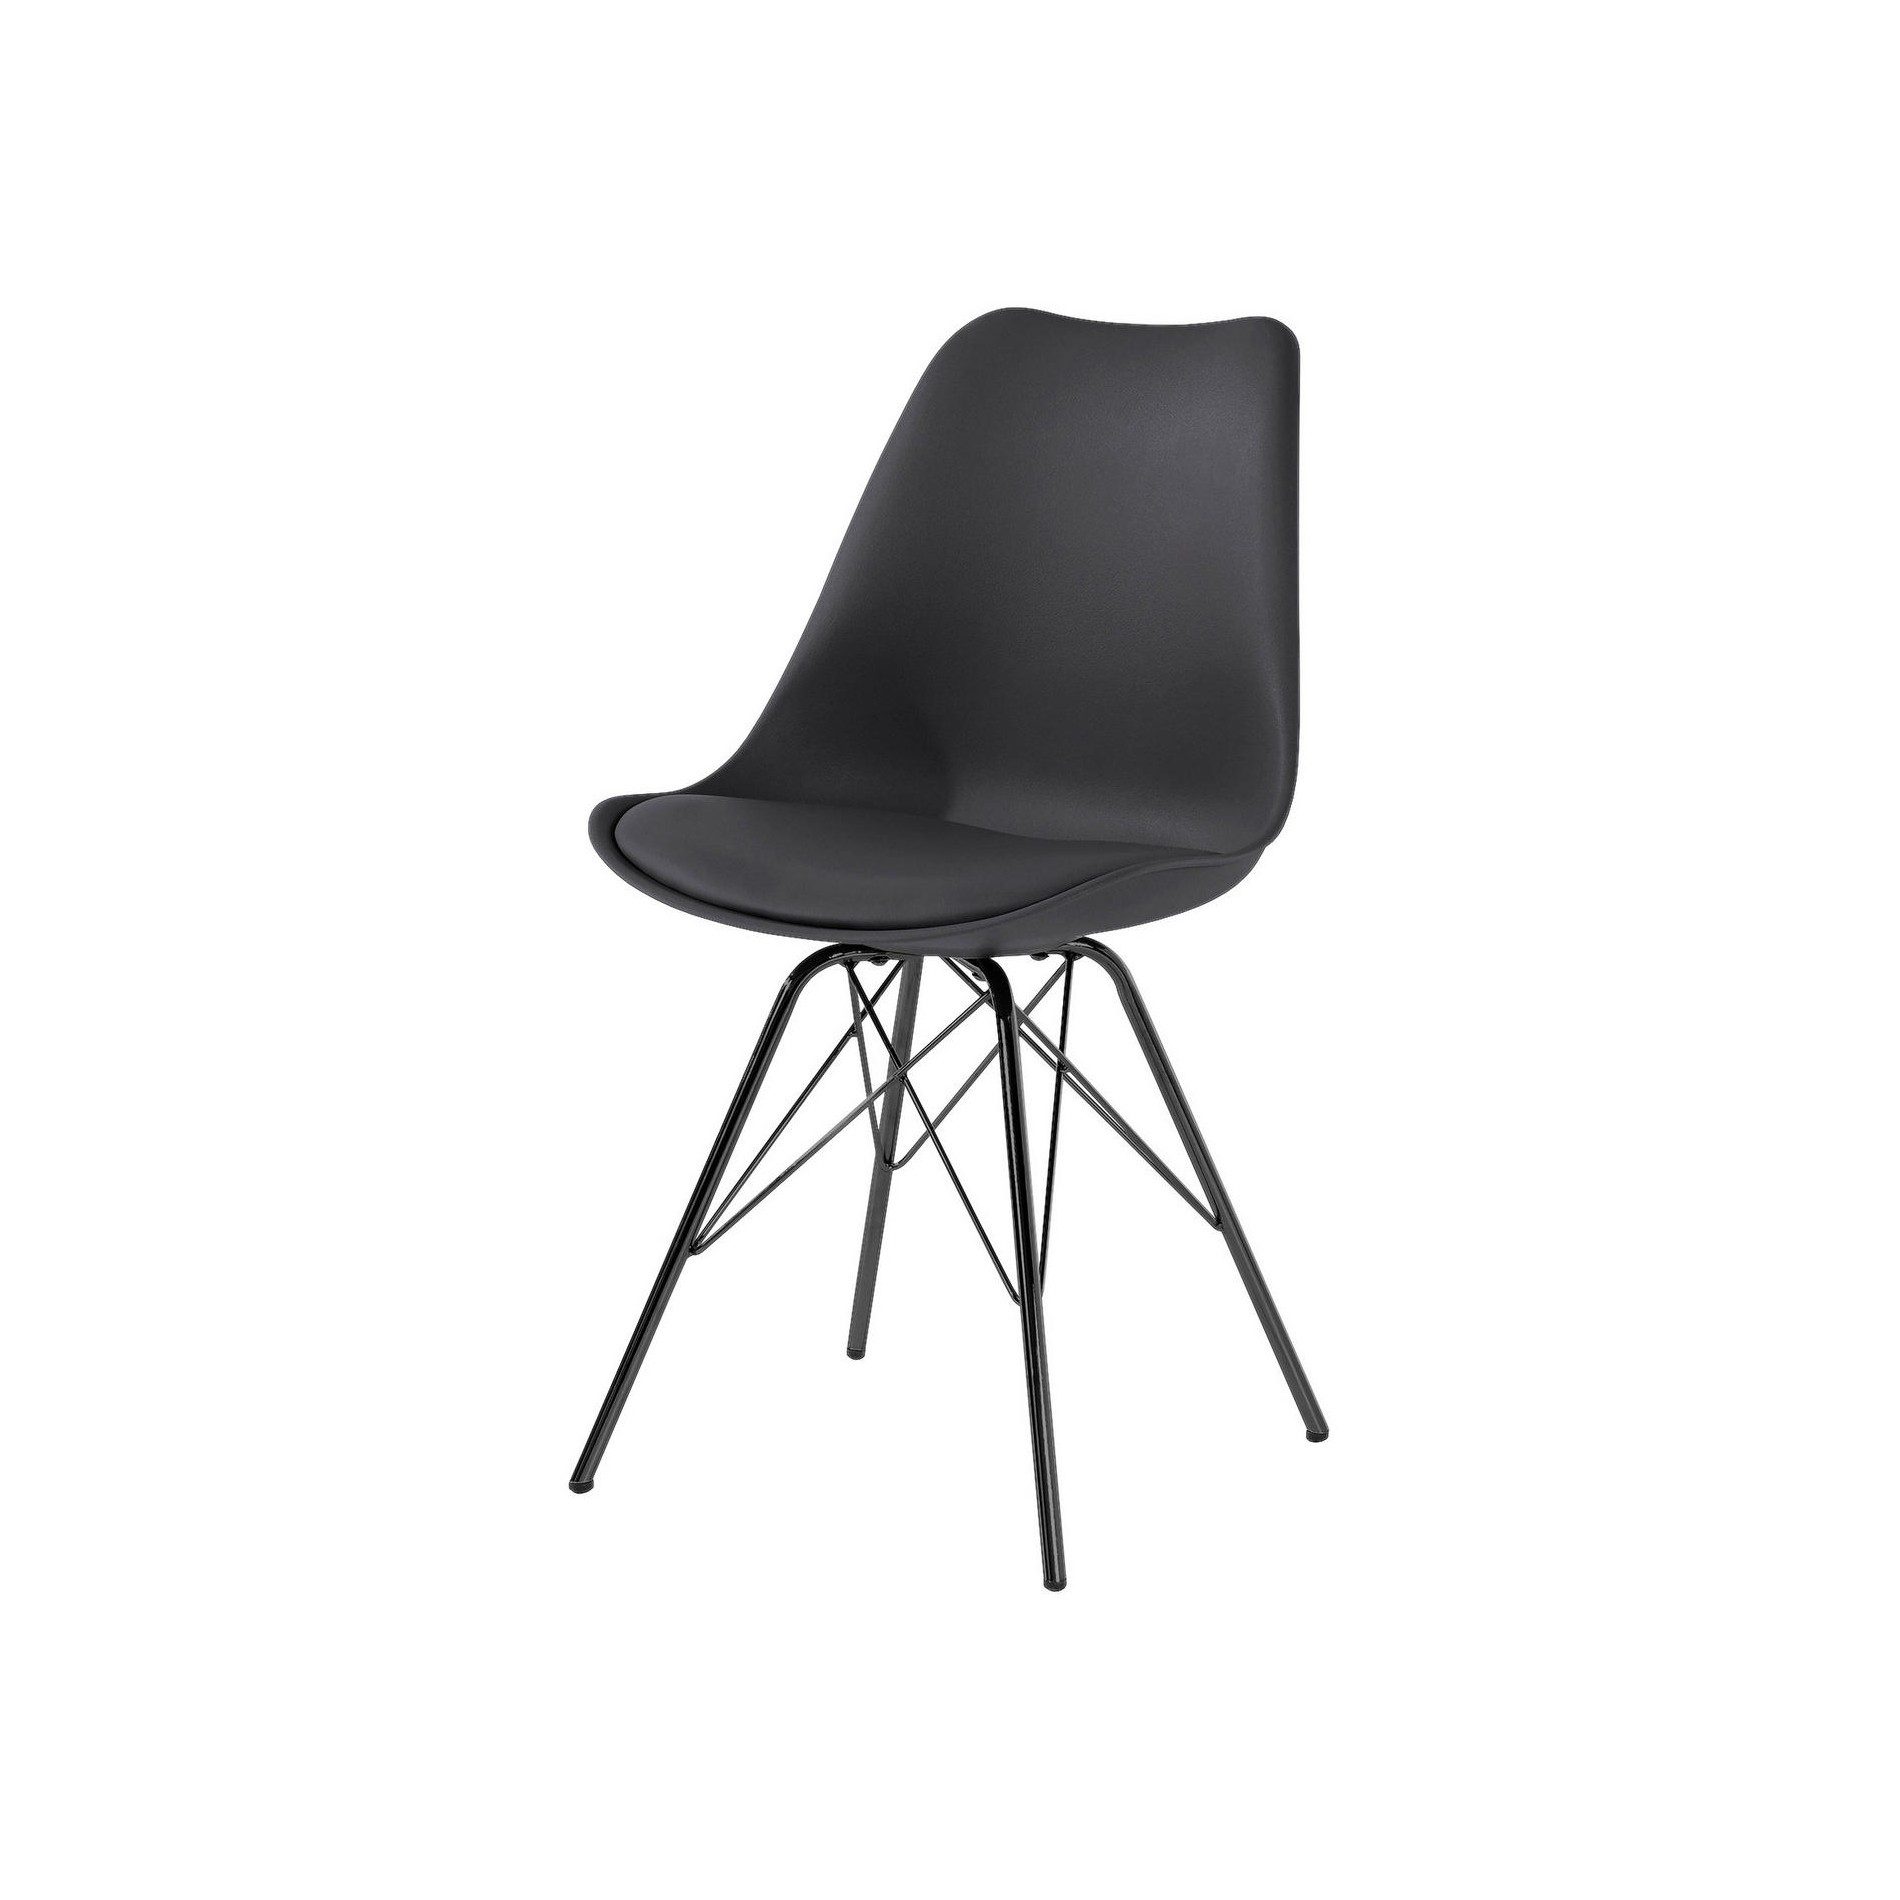 Trendstore „Ariane“ Stuhl mit Bezug aus Kunstleder in Schwarz und Metallgestell als Freisteller.